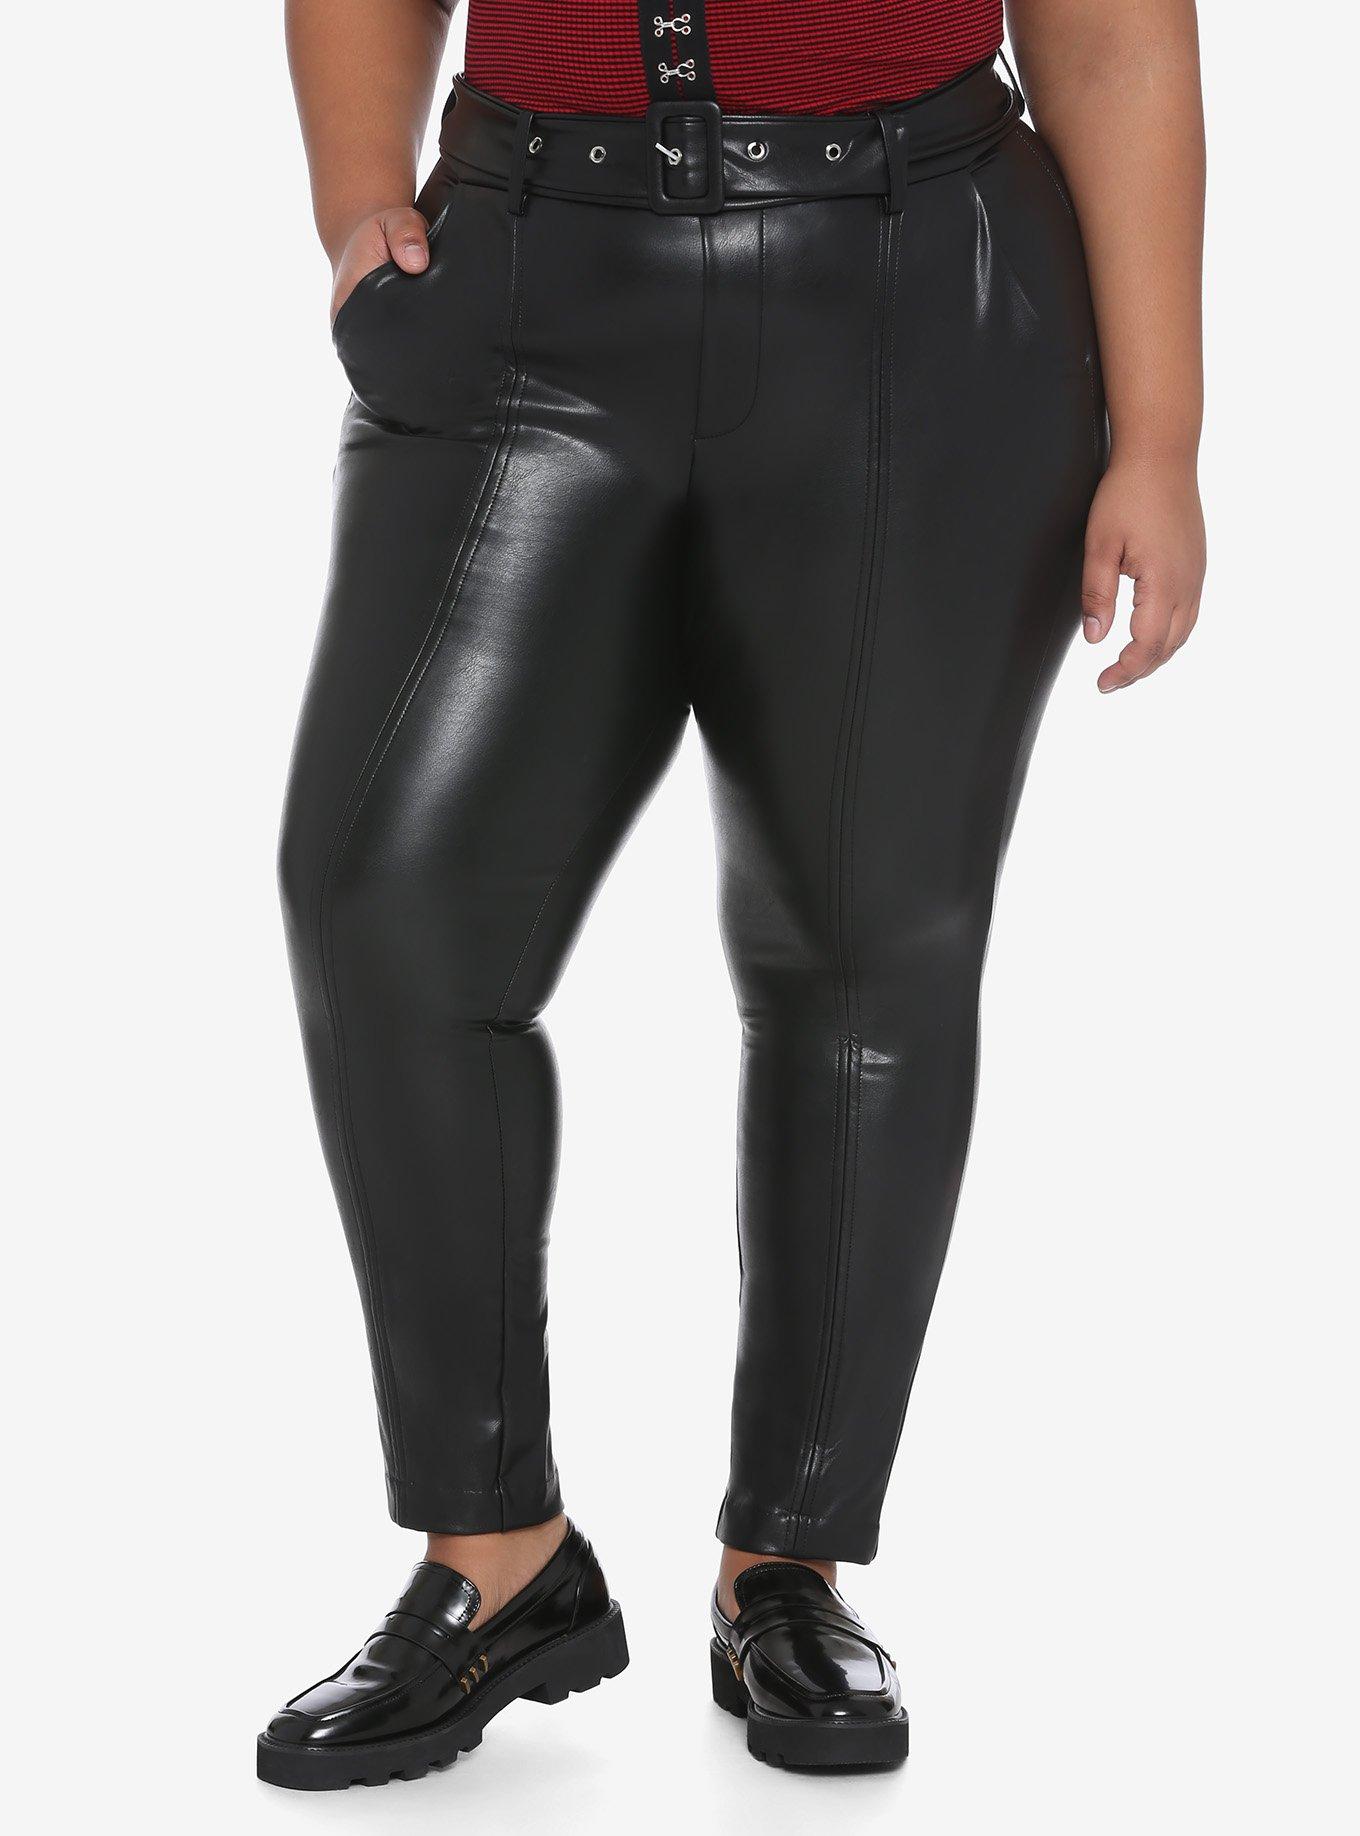 Black Faux Leather Pants Plus Size